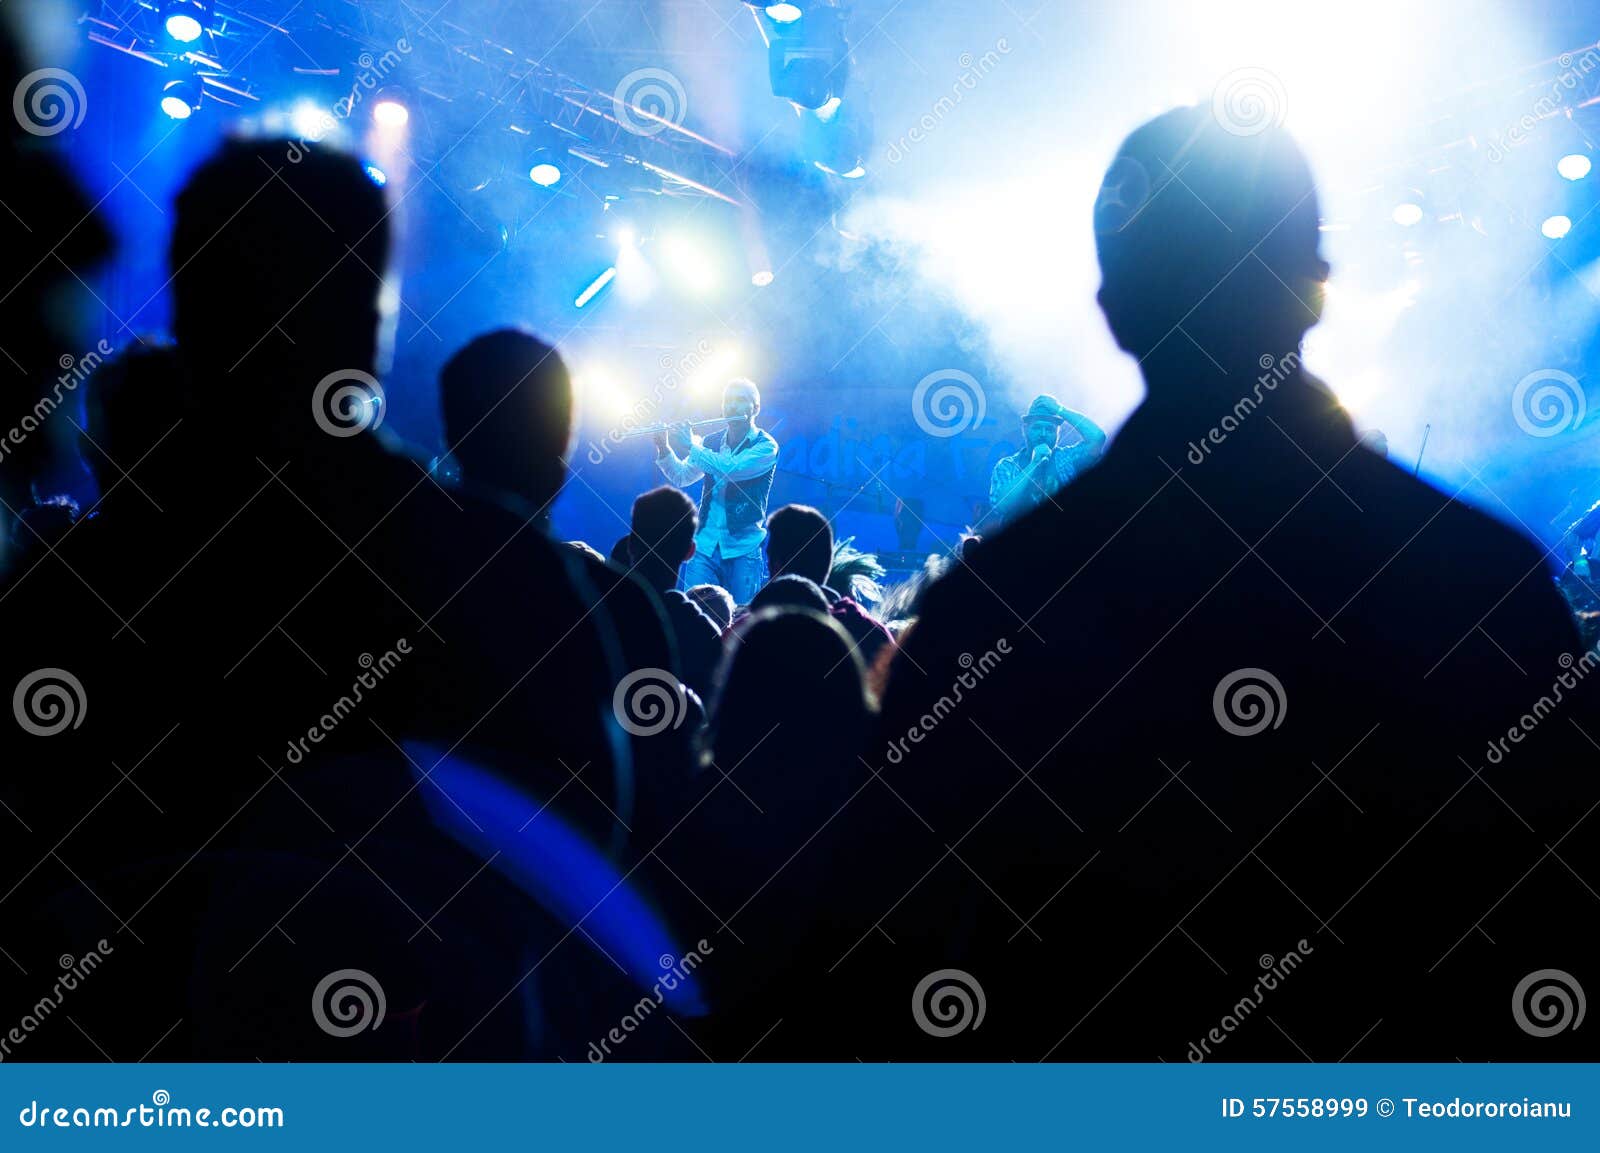 Frau, die Gesangschüssel und Gesang, in der purpurroten und blauen Beleuchtung spielt. Firkinirische Punkbandausführung Live an padina Fest 2015 mit Nebel und Lichtern für die erfasste Menge